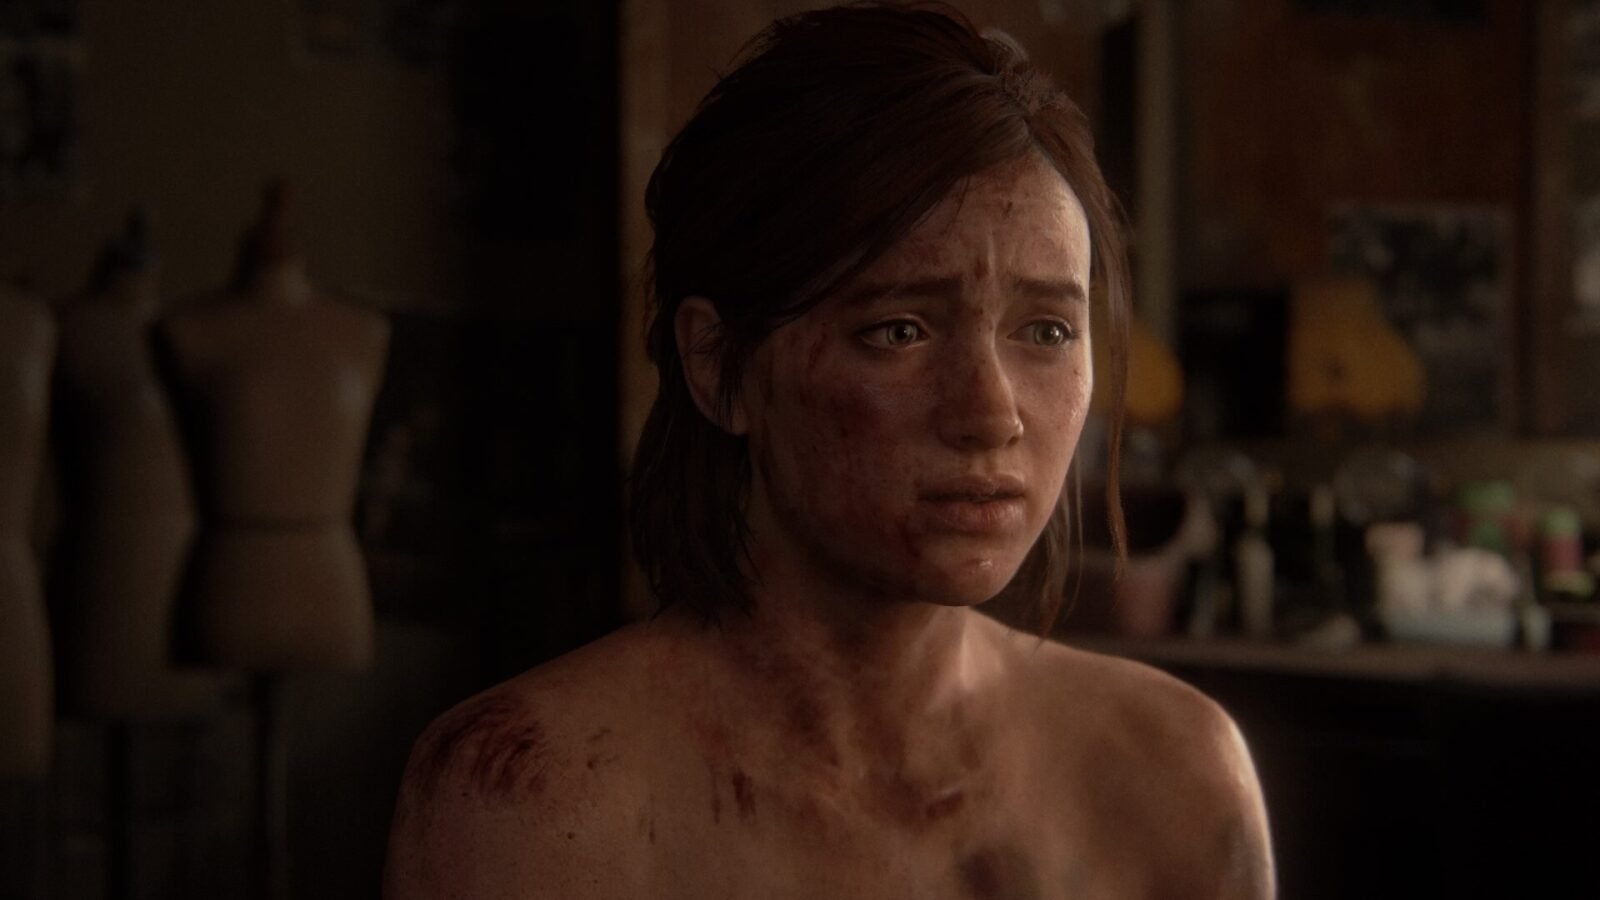 Ellie, machucada, ensanguentada e preocupada em cena de The Last of Us Part II.